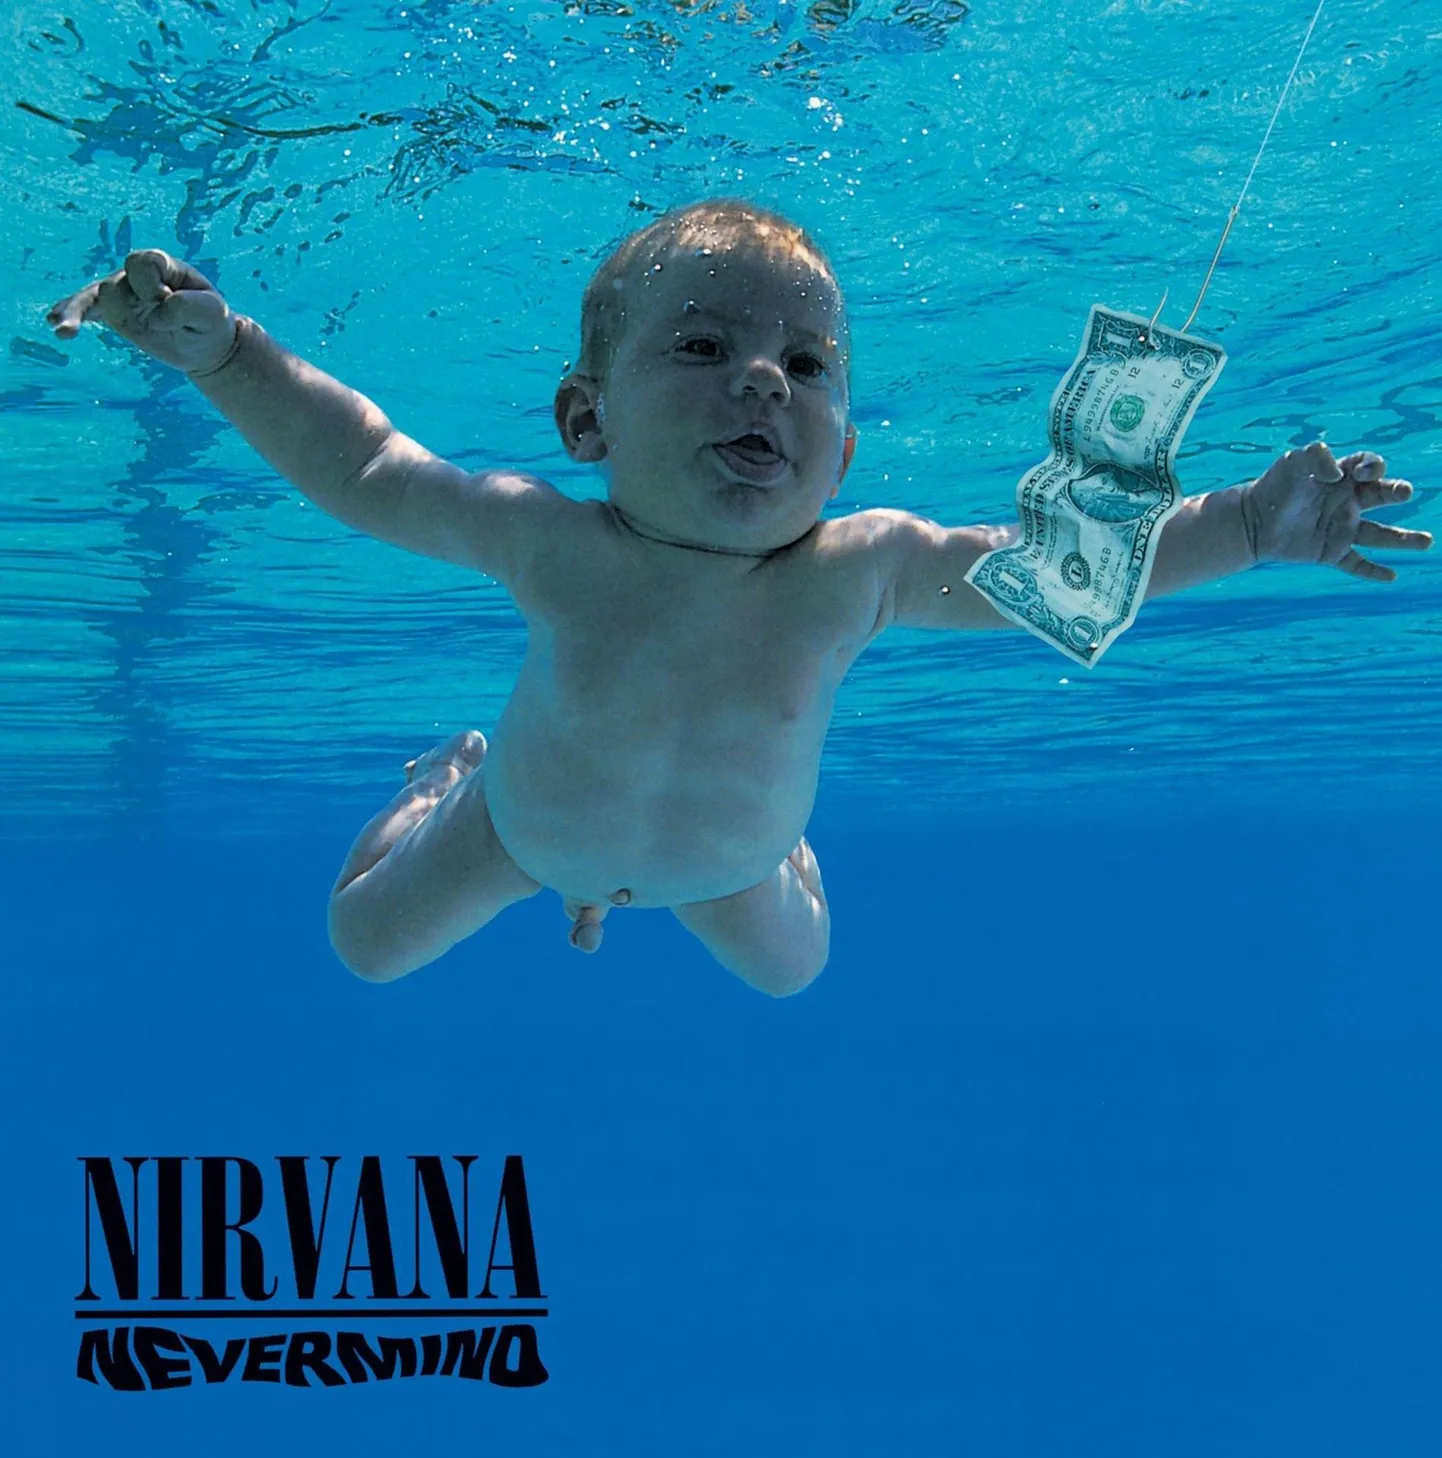 Nirvana albumi «Nevermind» kaas, mille ujuv imik on otsustanud kõik beebipildiga seotud surnud ja elavad kohtusse anda.